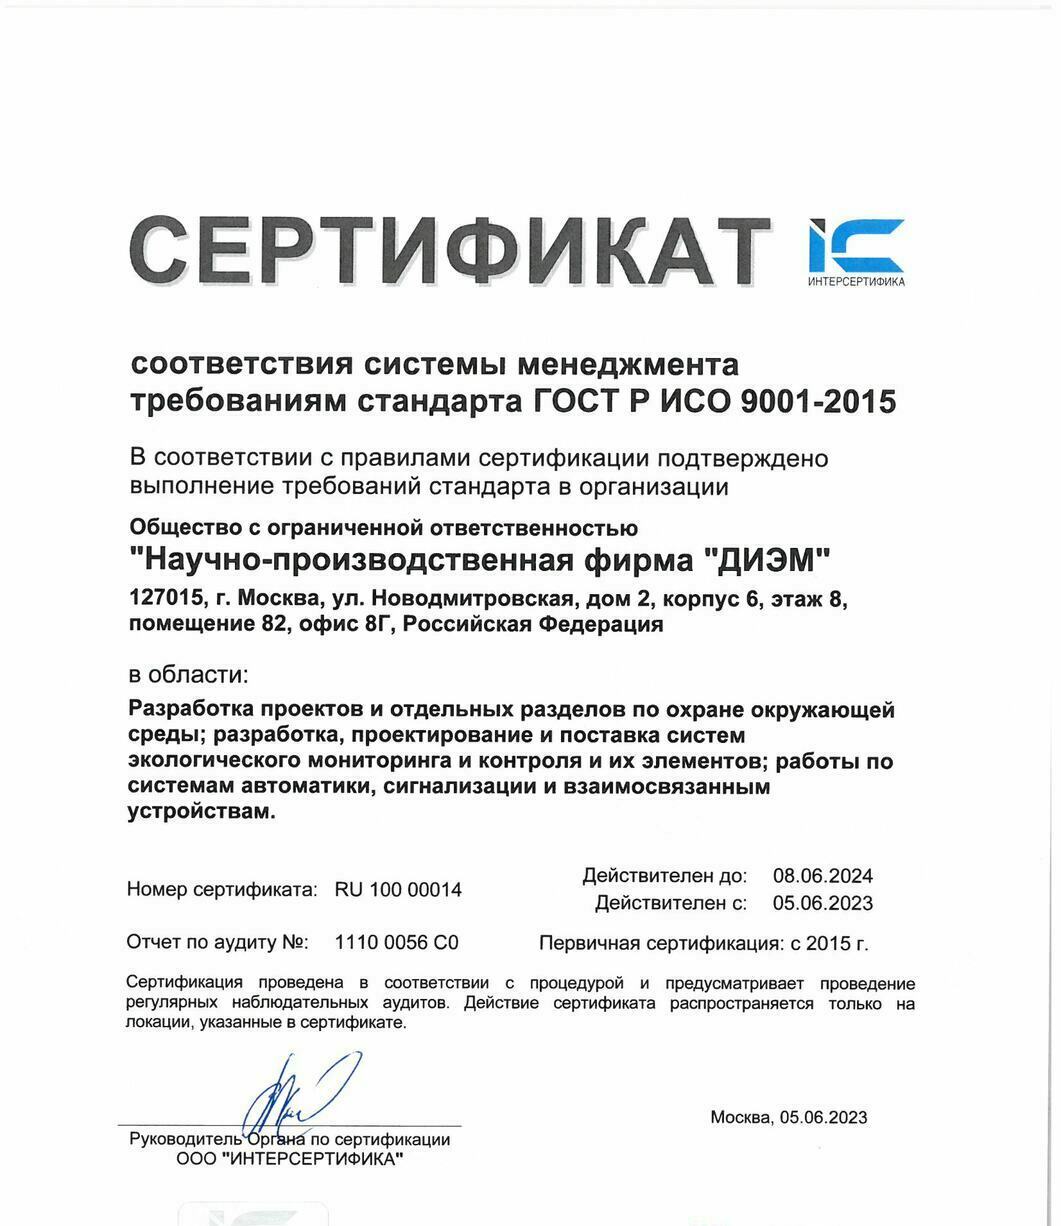 Сертификат соответствия системы менеджмента требованиям стандарта ГОСТ ISO 9001-2015